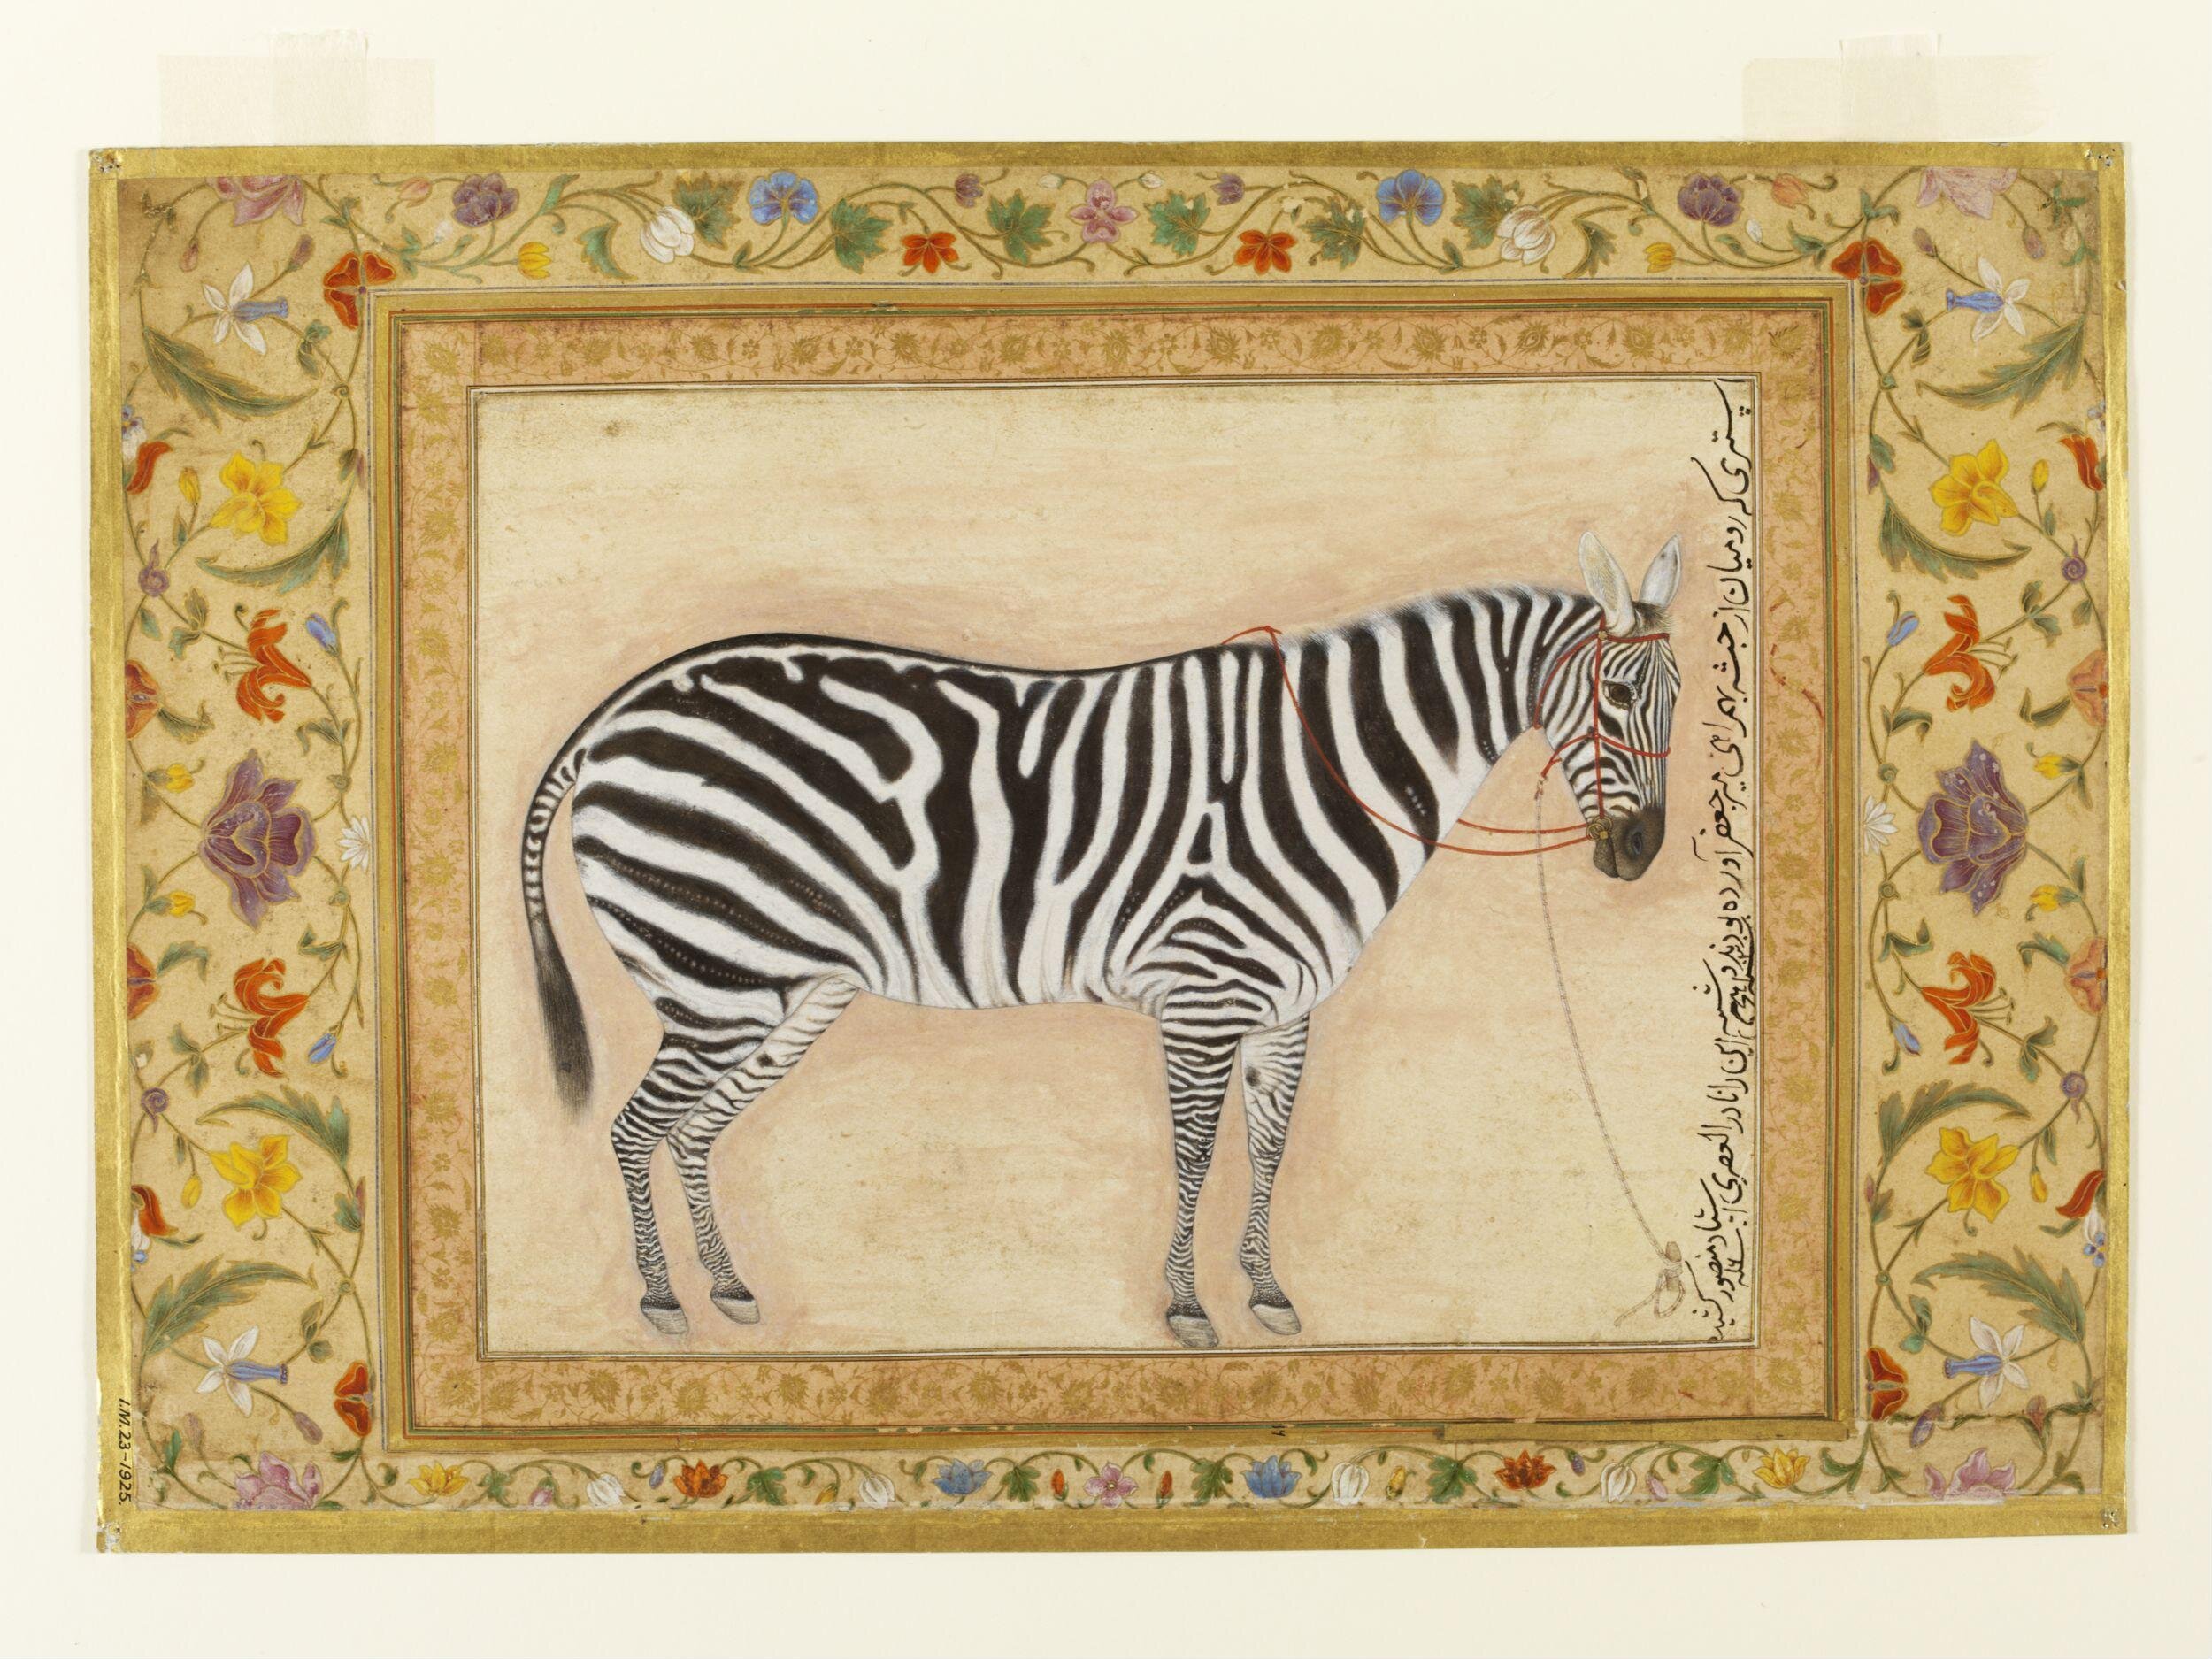 Zebra by Ustad Mansur - 1621 - 38.7 x 24 cm 